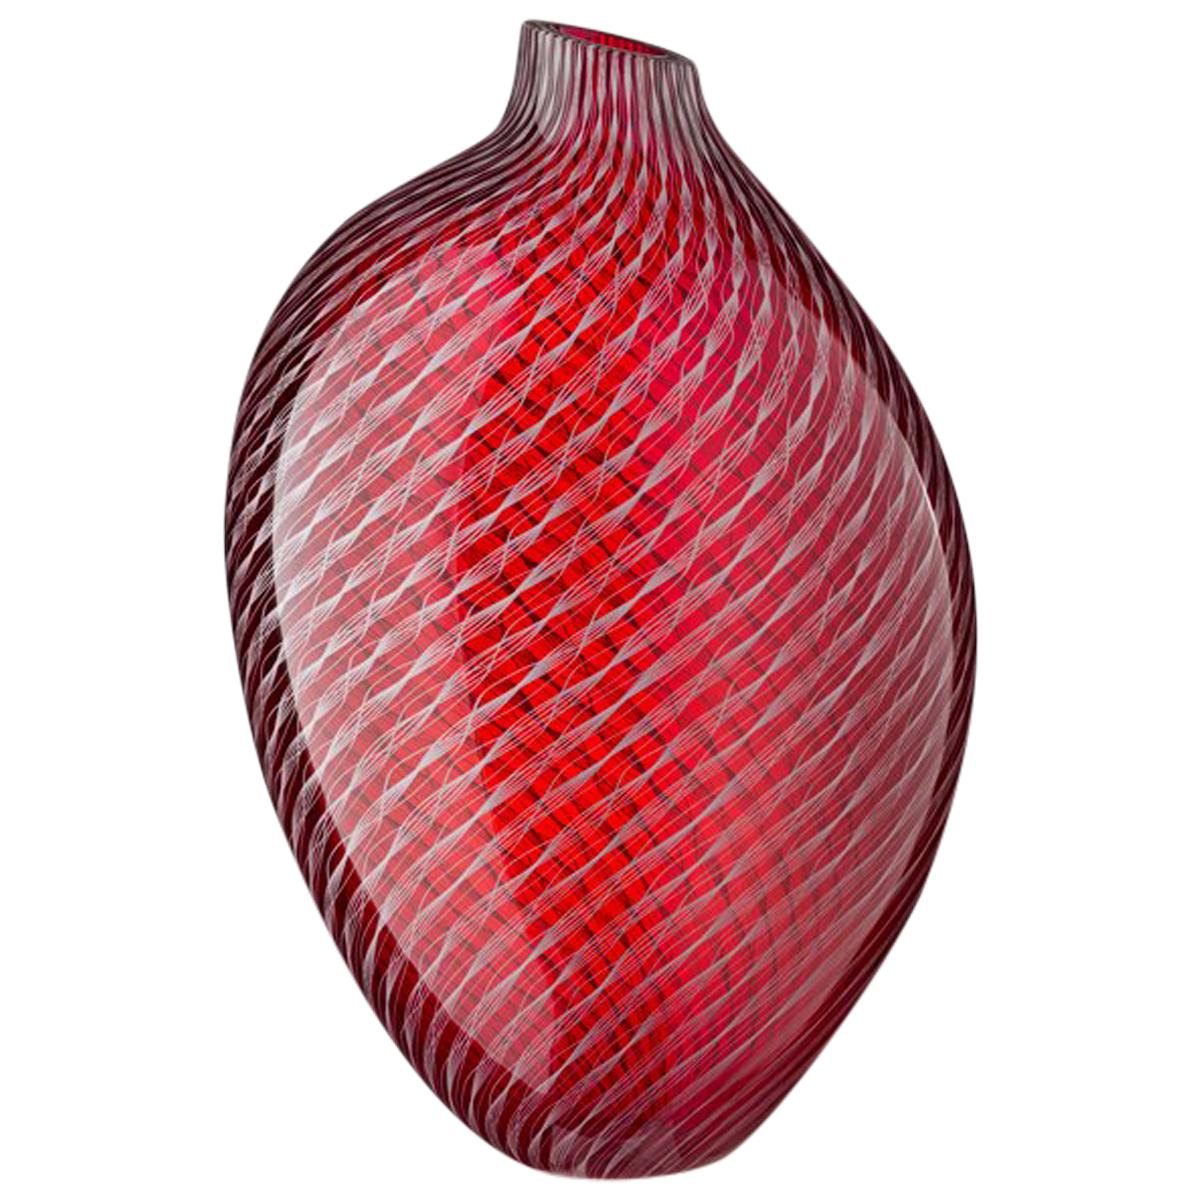 Handblown Red Murano Glass Filigree Vase "Ripple" by Studio Dillon for Salviati For Sale